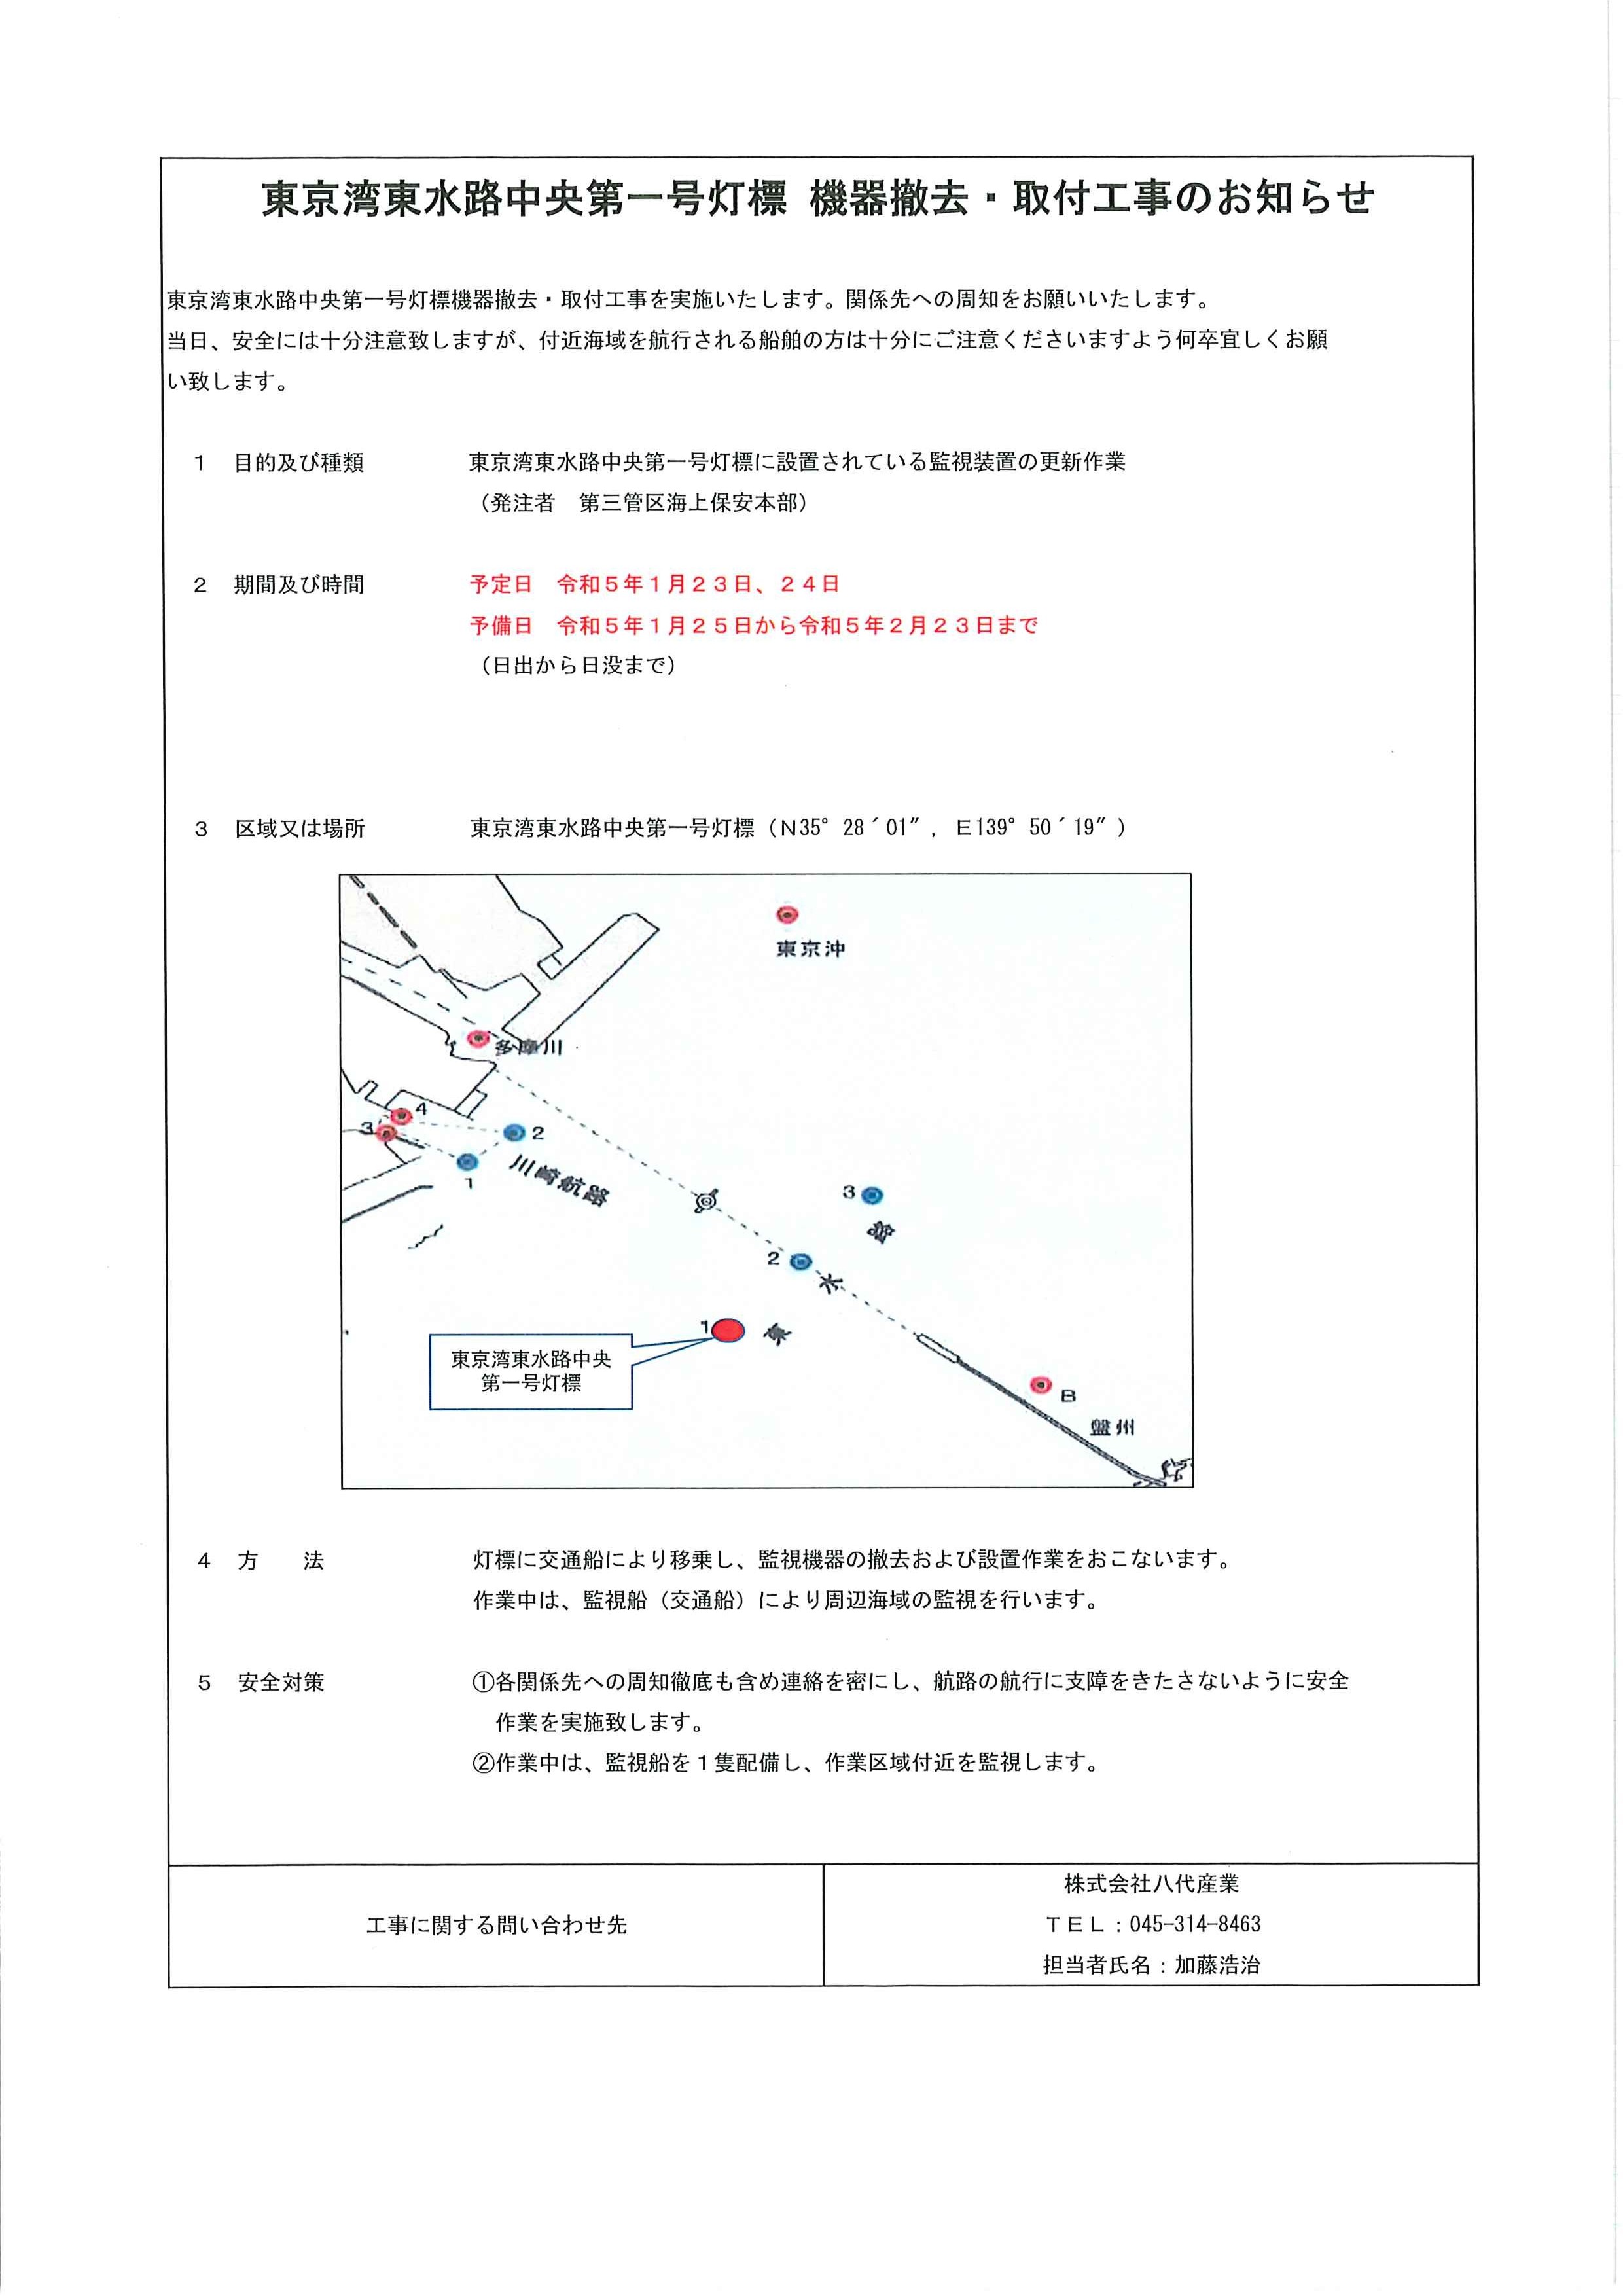 東京湾東水路中央第一号灯標機器撤去・取付工事のお知らせ